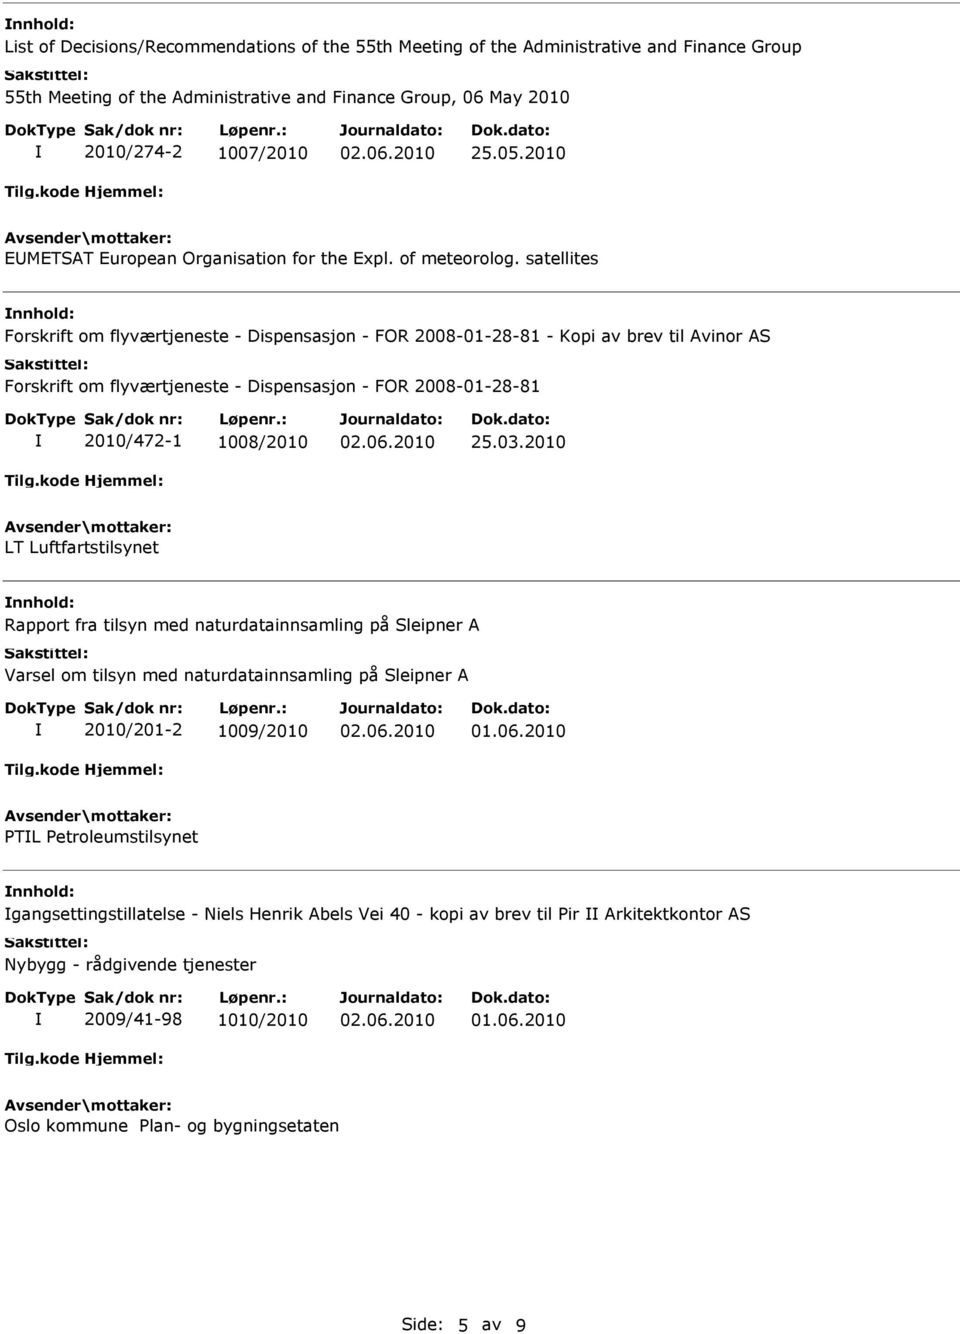 satellites Forskrift om flyværtjeneste - Dispensasjon - FOR 2008-01-28-81 - Kopi av brev til Avinor AS Forskrift om flyværtjeneste - Dispensasjon - FOR 2008-01-28-81 2010/472-1 1008/2010 25.03.